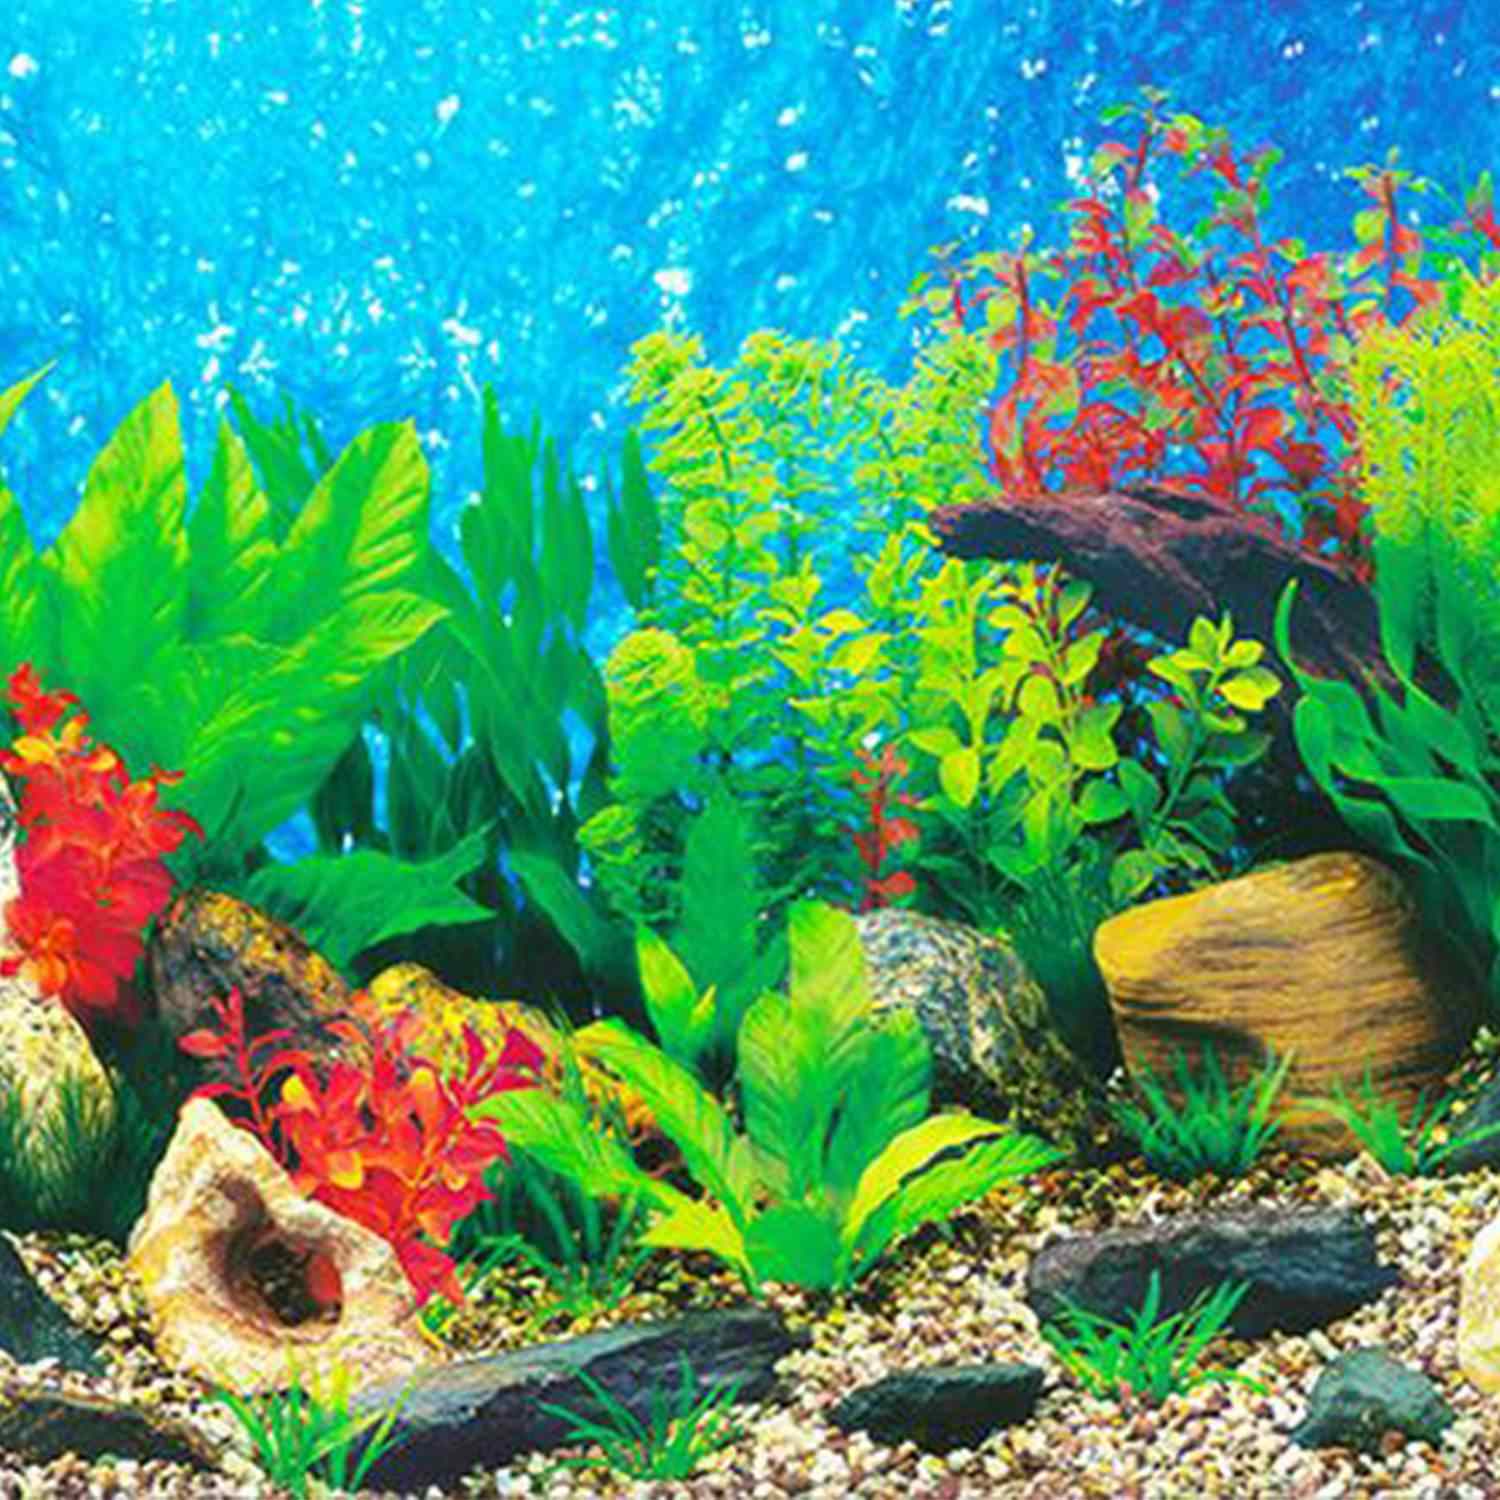 aquarium tapete hd,süßwasseraquarium,unter wasser,aquarium,meeresbiologie,fisch